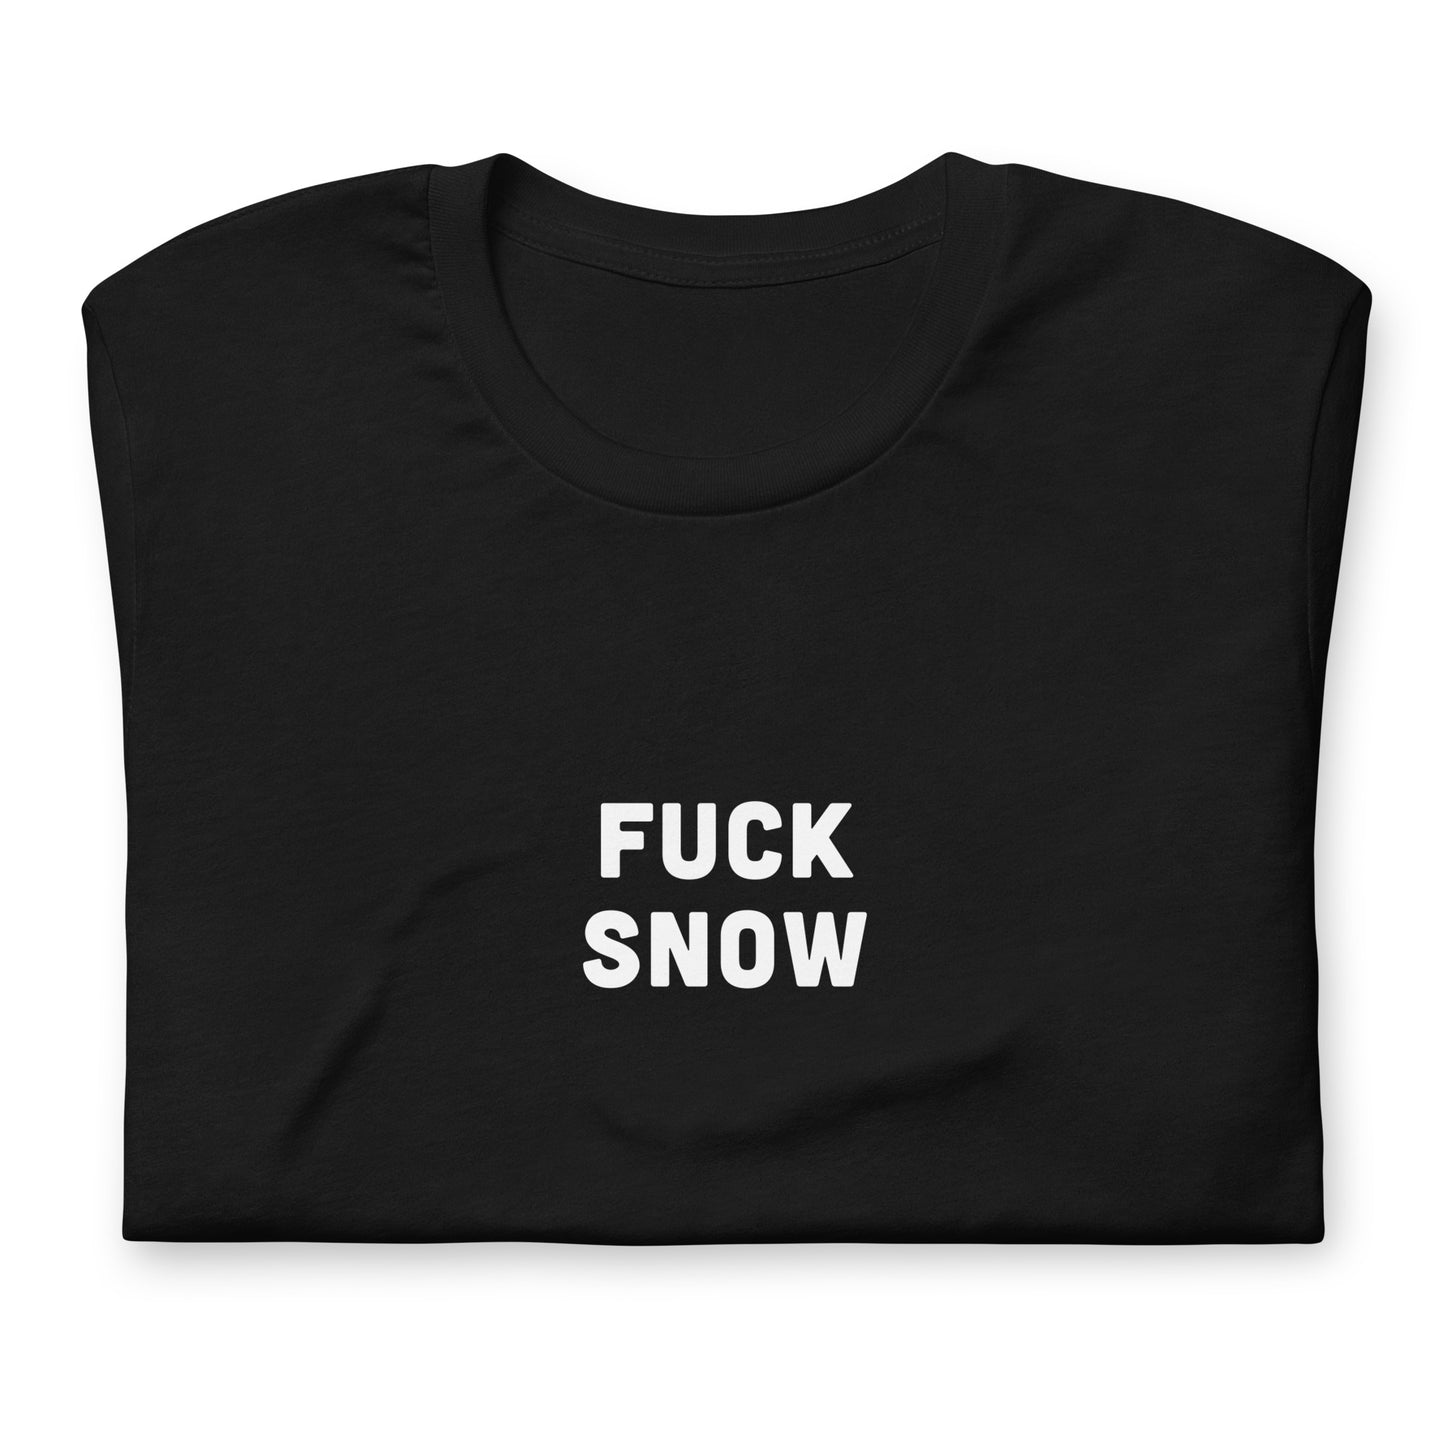 Fuck Snow T-Shirt Size M Color Black